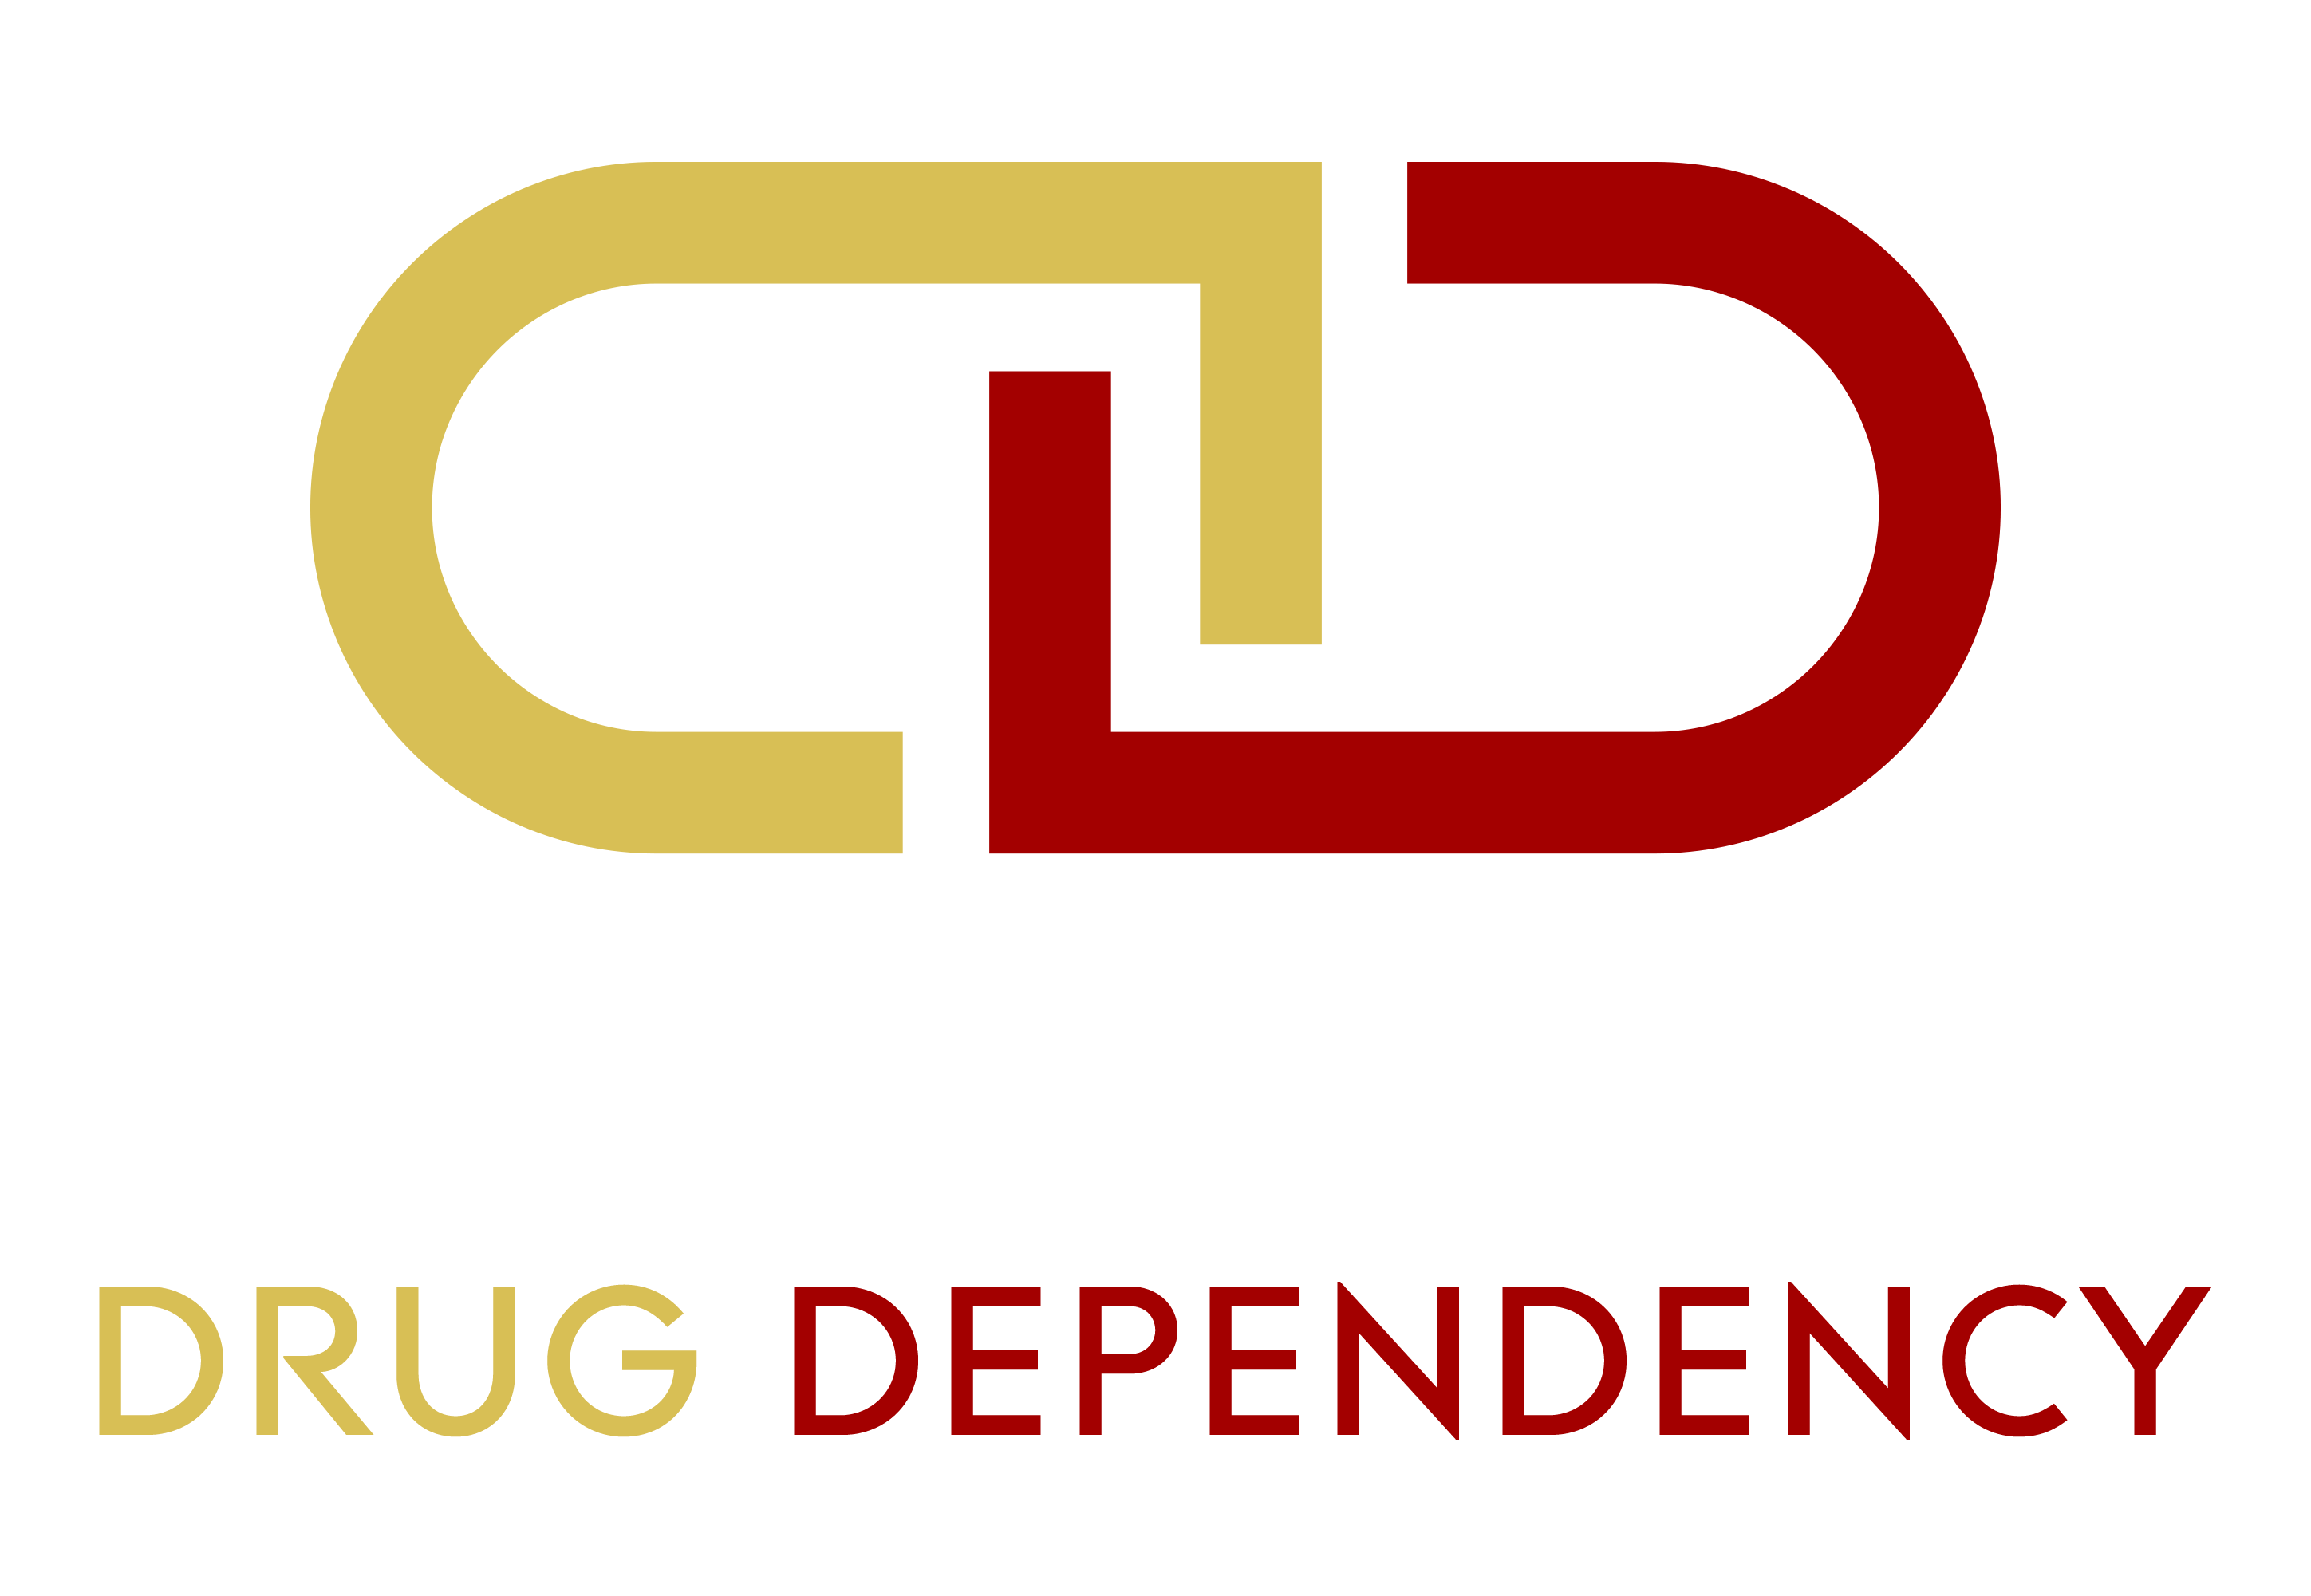 Information Source for Drug Dependency